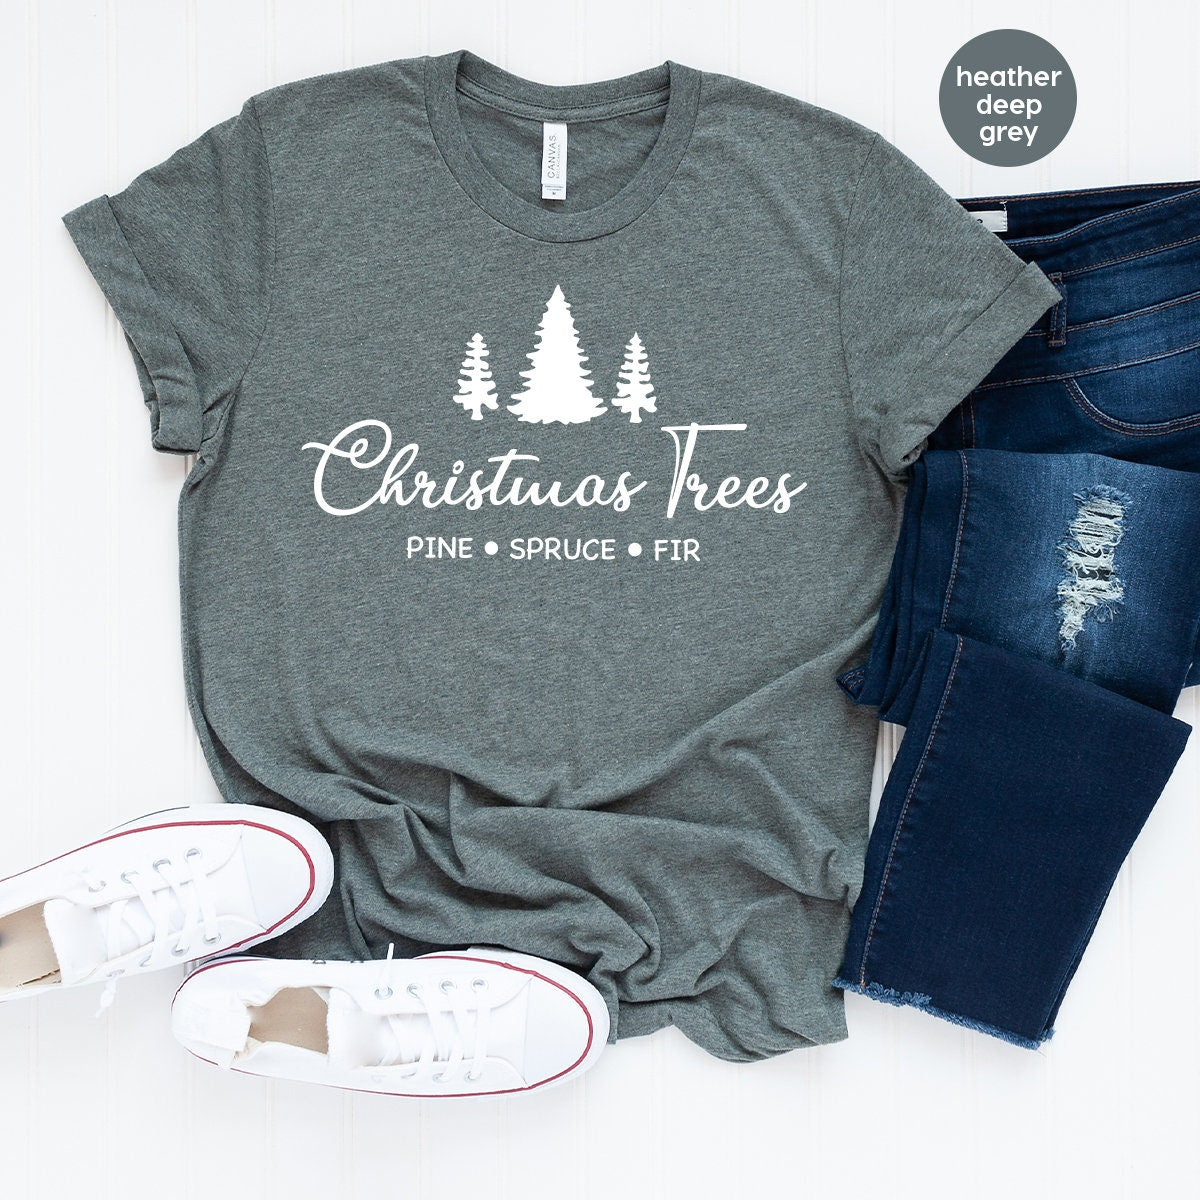 Christmas T Shirt, Christmas Tree Tee, Pine Spruce Fir Shirt, Christmas Vacation Shirt, Christmas Gift, Holiday Shirt, Women's Christmas Tee - Fastdeliverytees.com